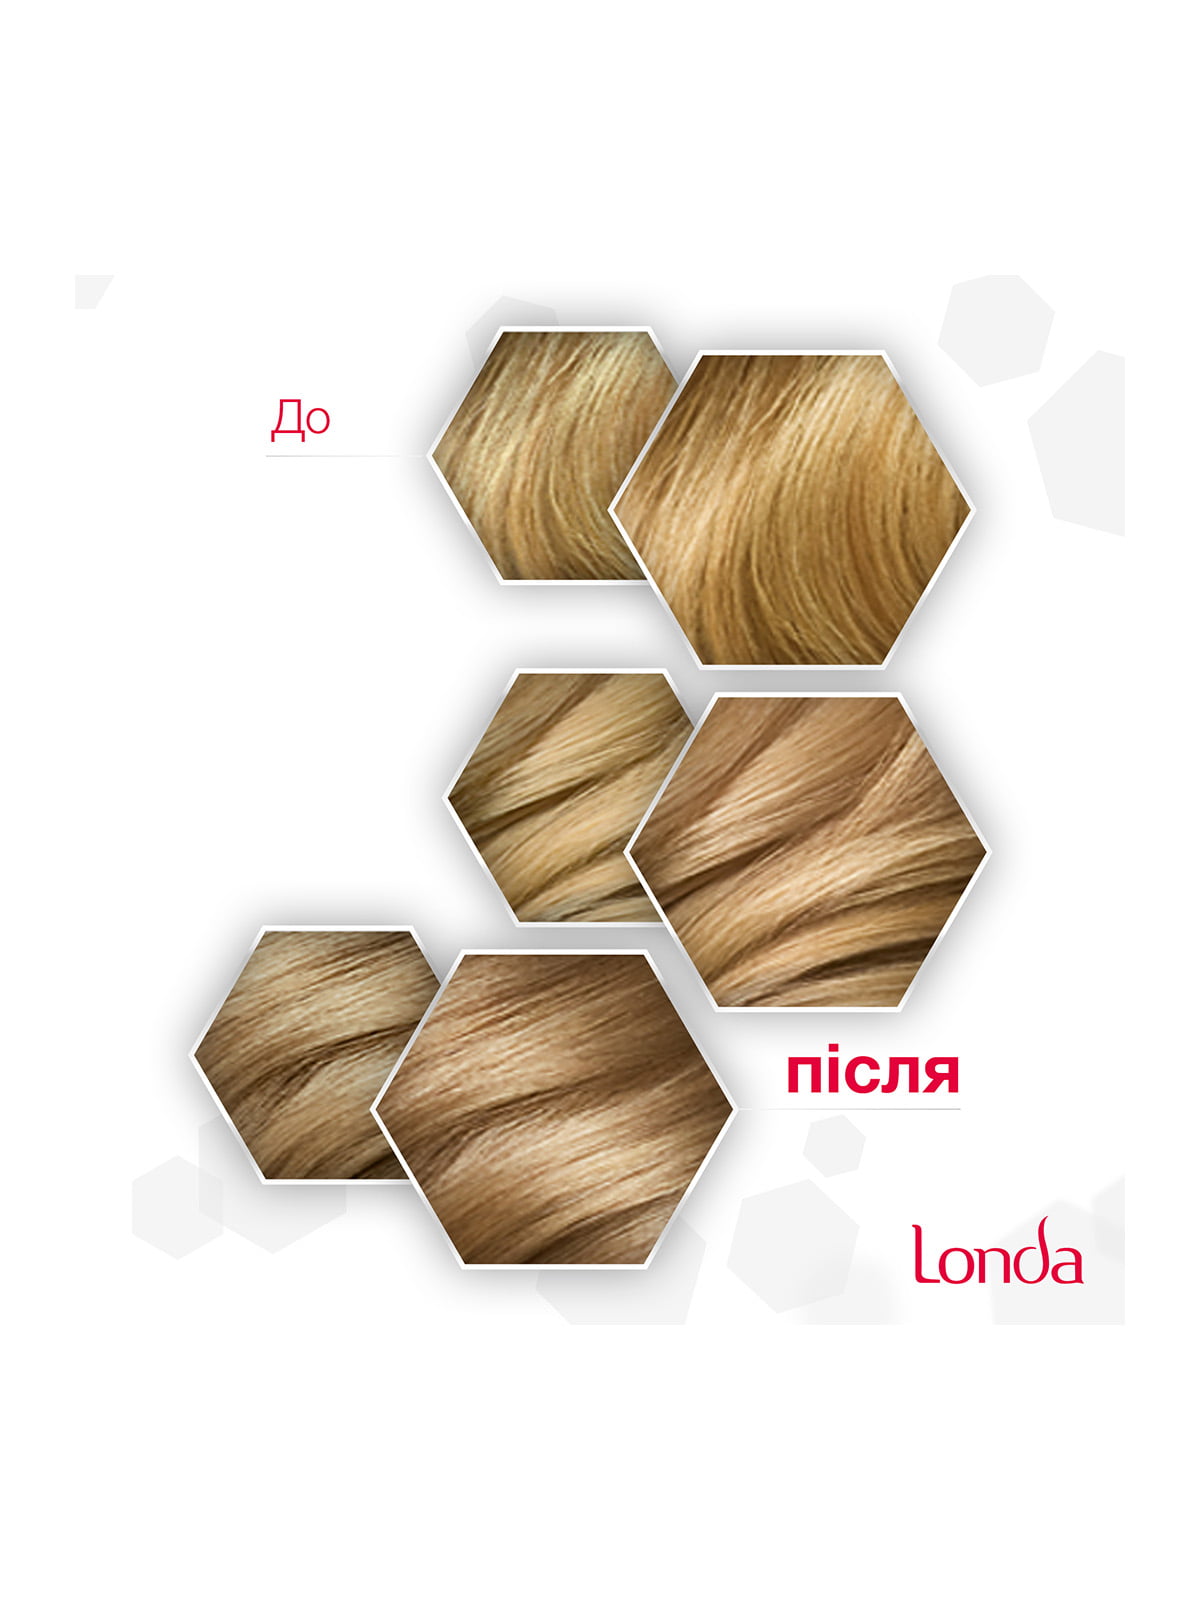 Londa крем-краска для волос стойкая 38 бежевый блондин